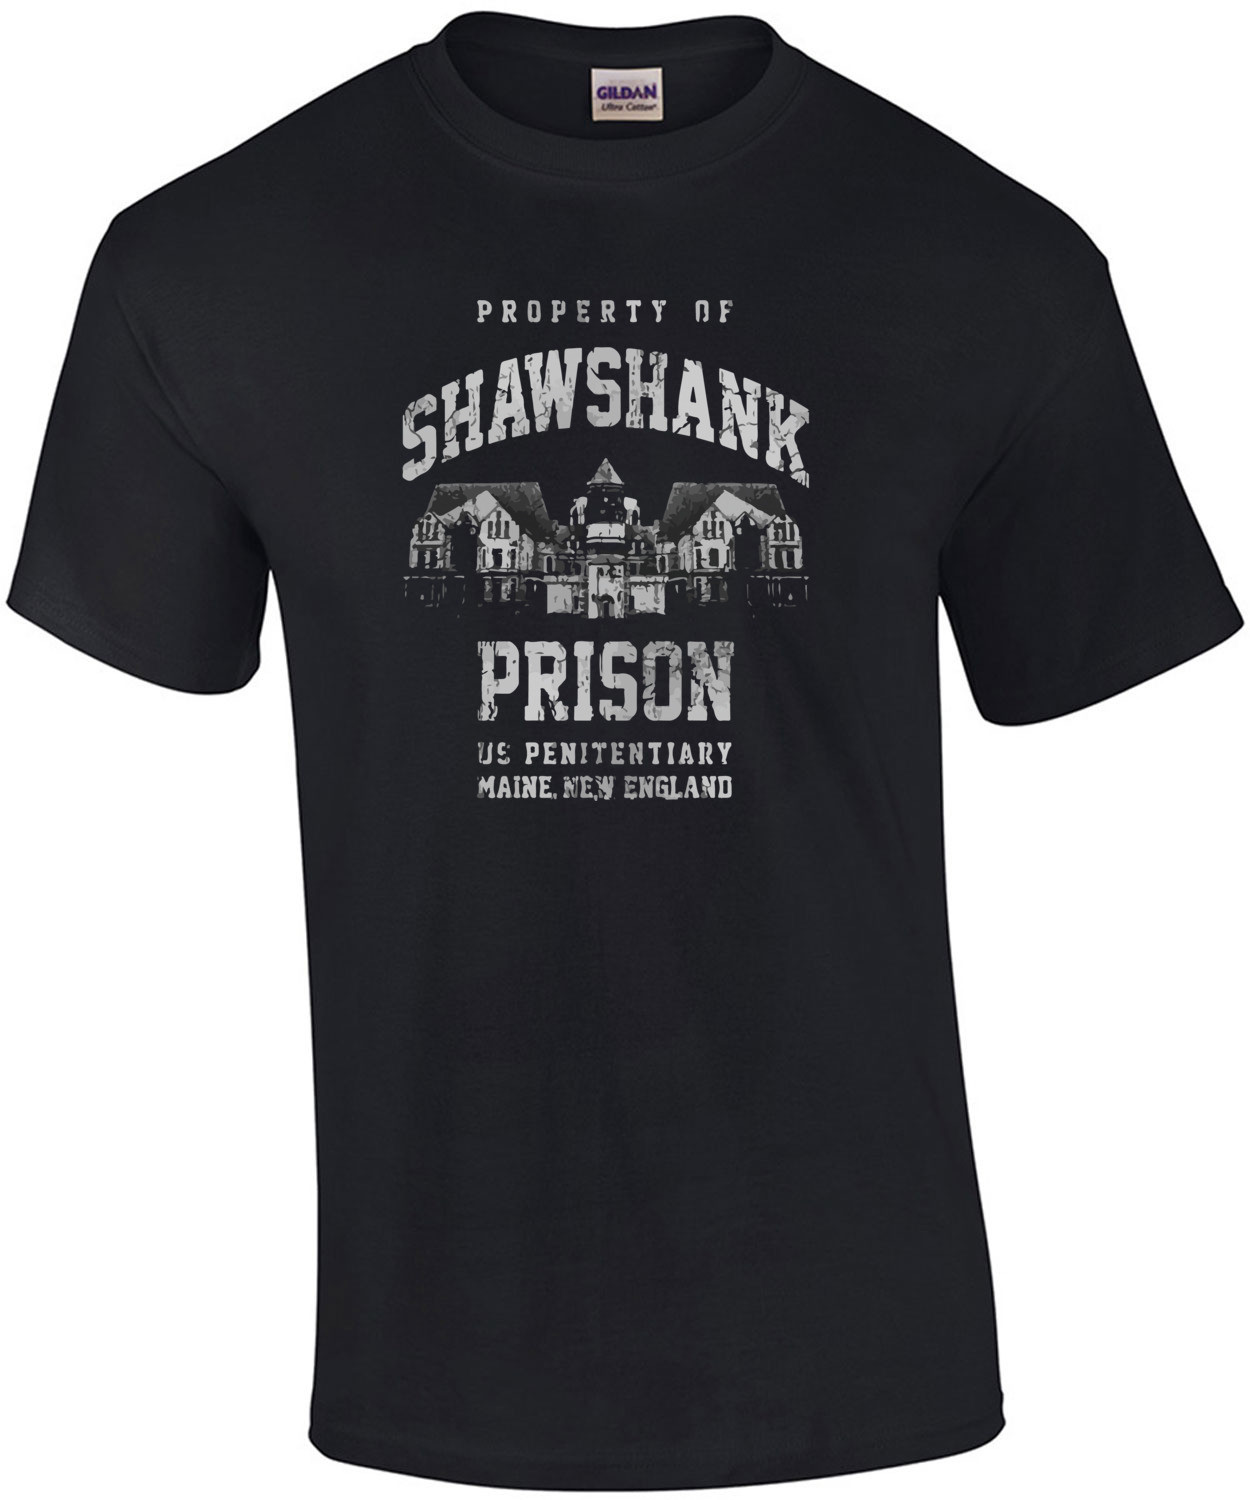 Shawshank Prison - Shawshank Redemption